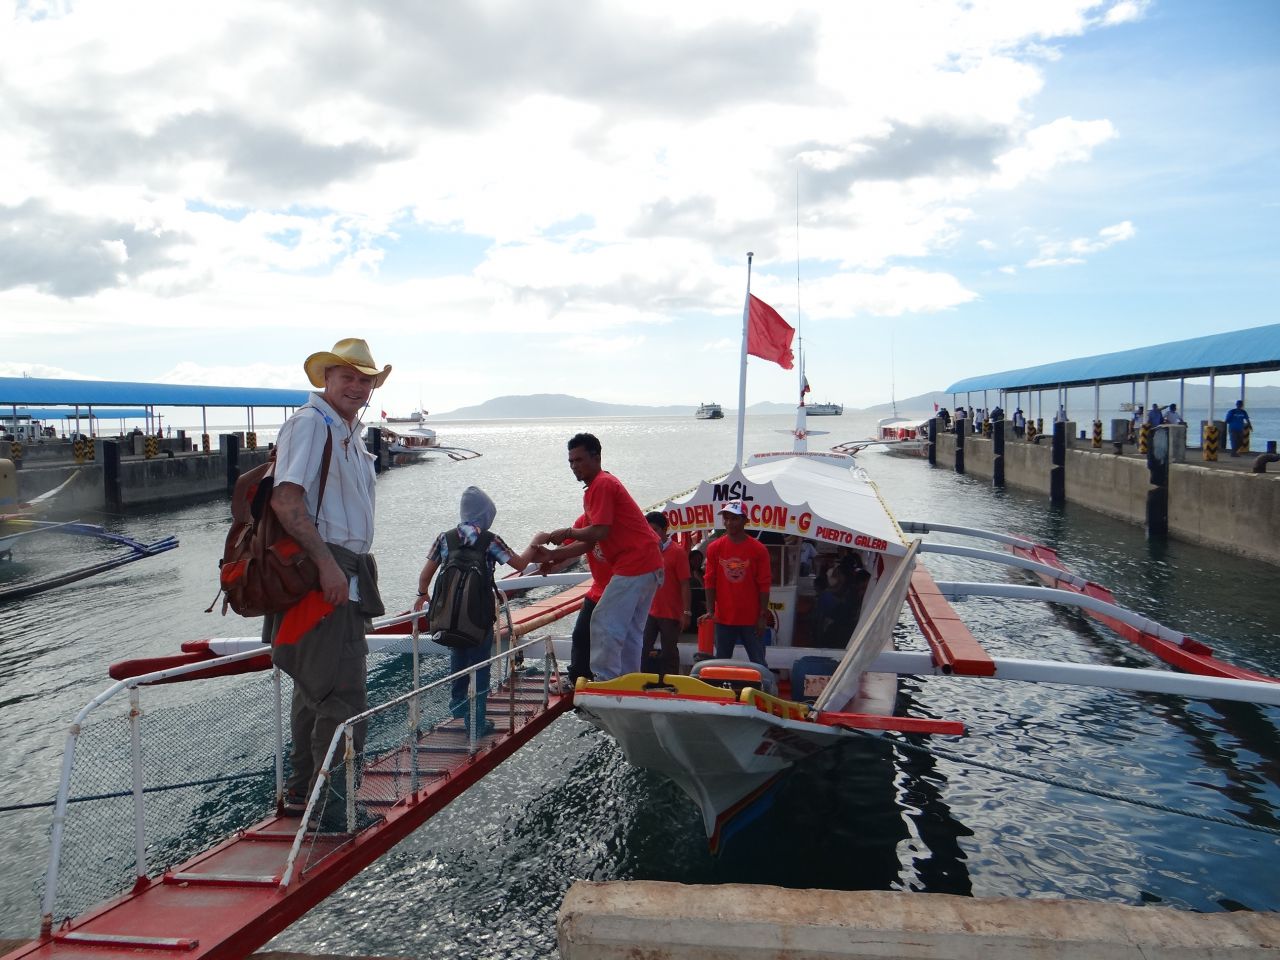 Банка - филиппинская лодка для путешествий по морю между остовами. - Австралия, Сингапур, Малайзия,Филиппины. Декабь 2012-январь 2013.